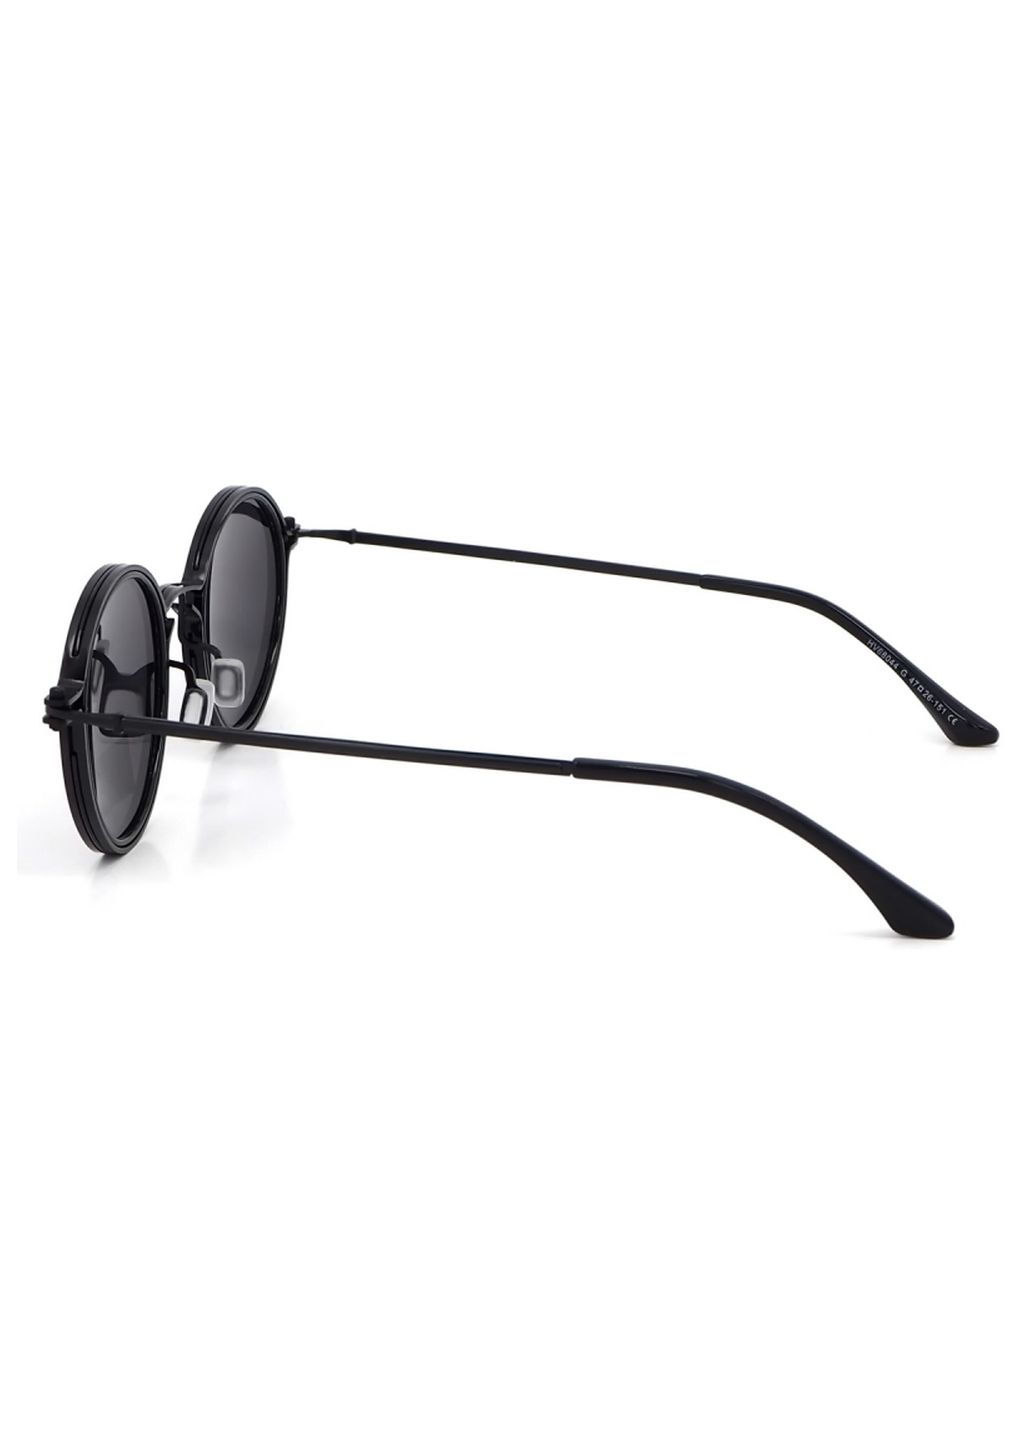 Купить Солнцезащитные очки c поляризацией HAVVS HV68044 170011 - Черный в интернет-магазине